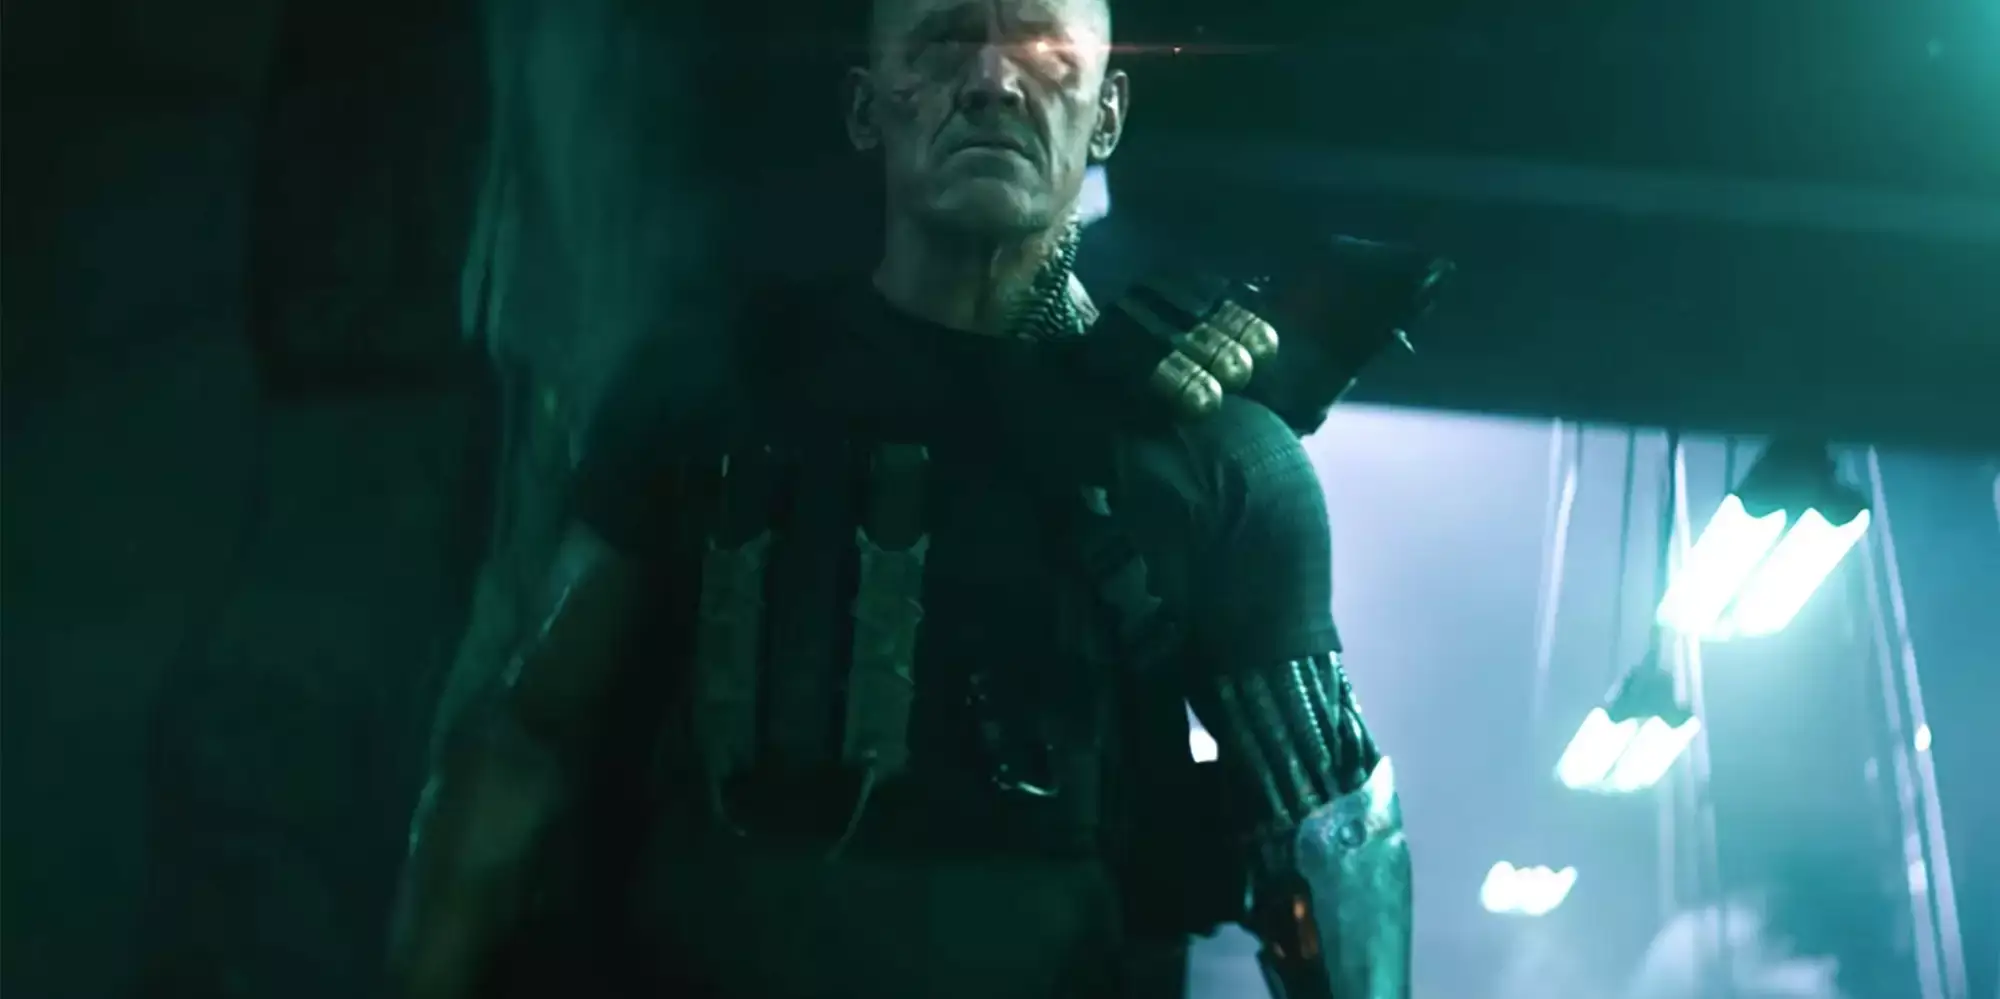 Josh Brolin as Cable, Deadpool 2 